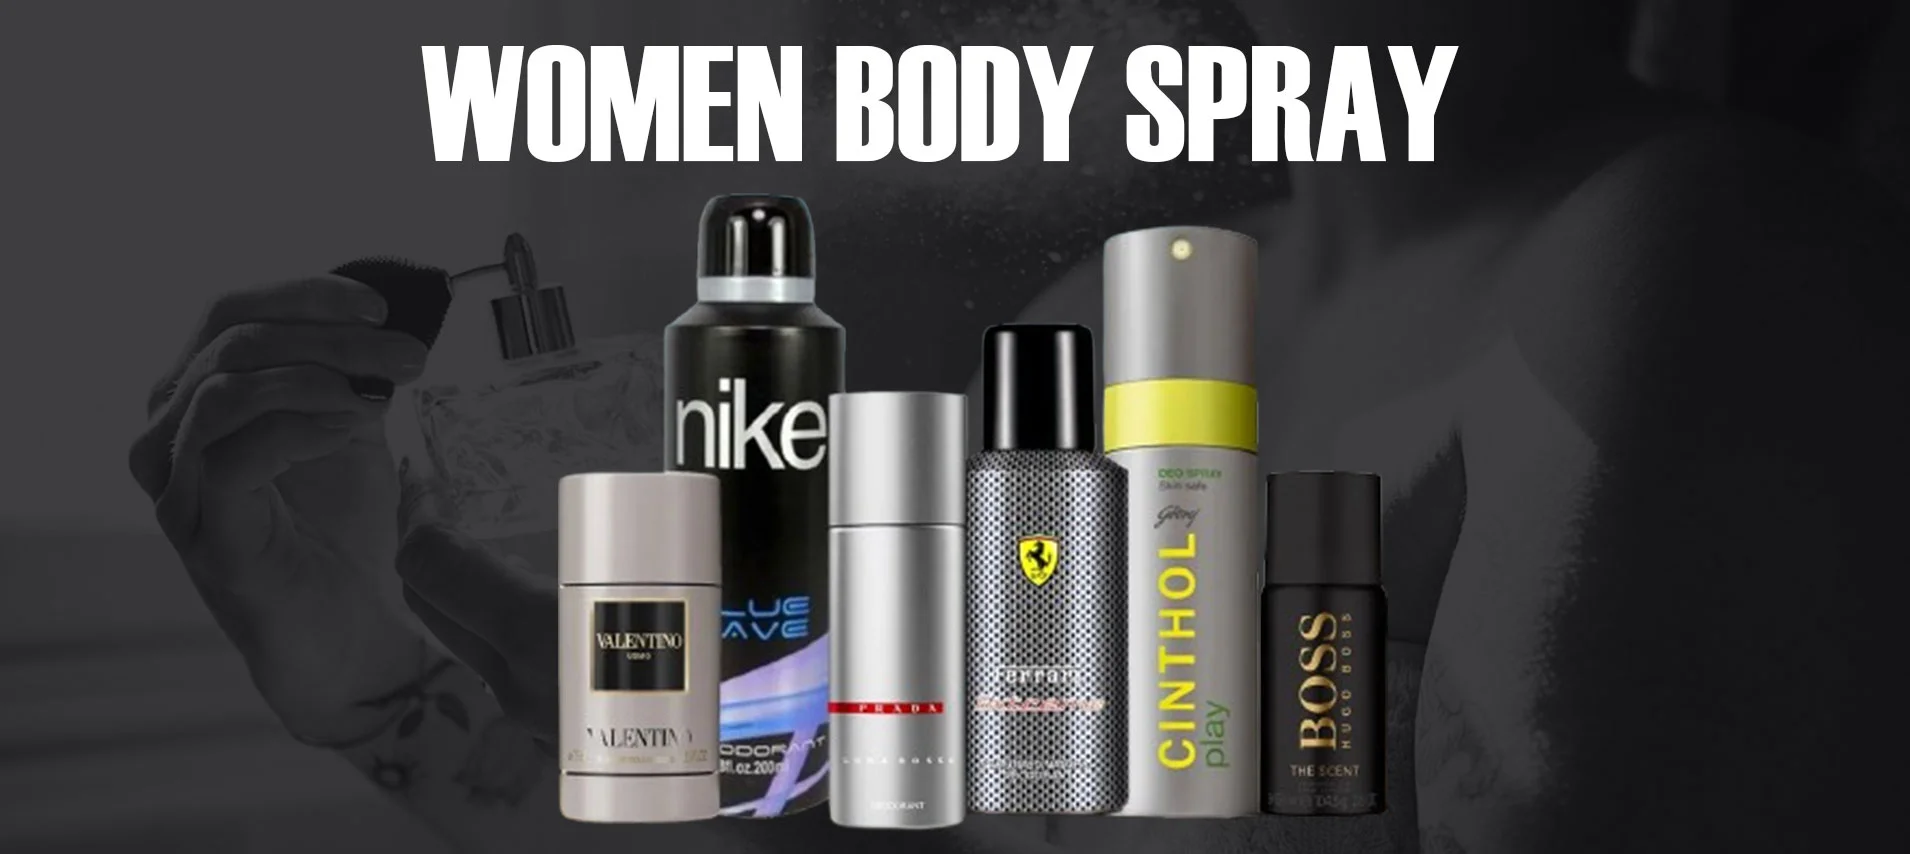 Women's Body Spray